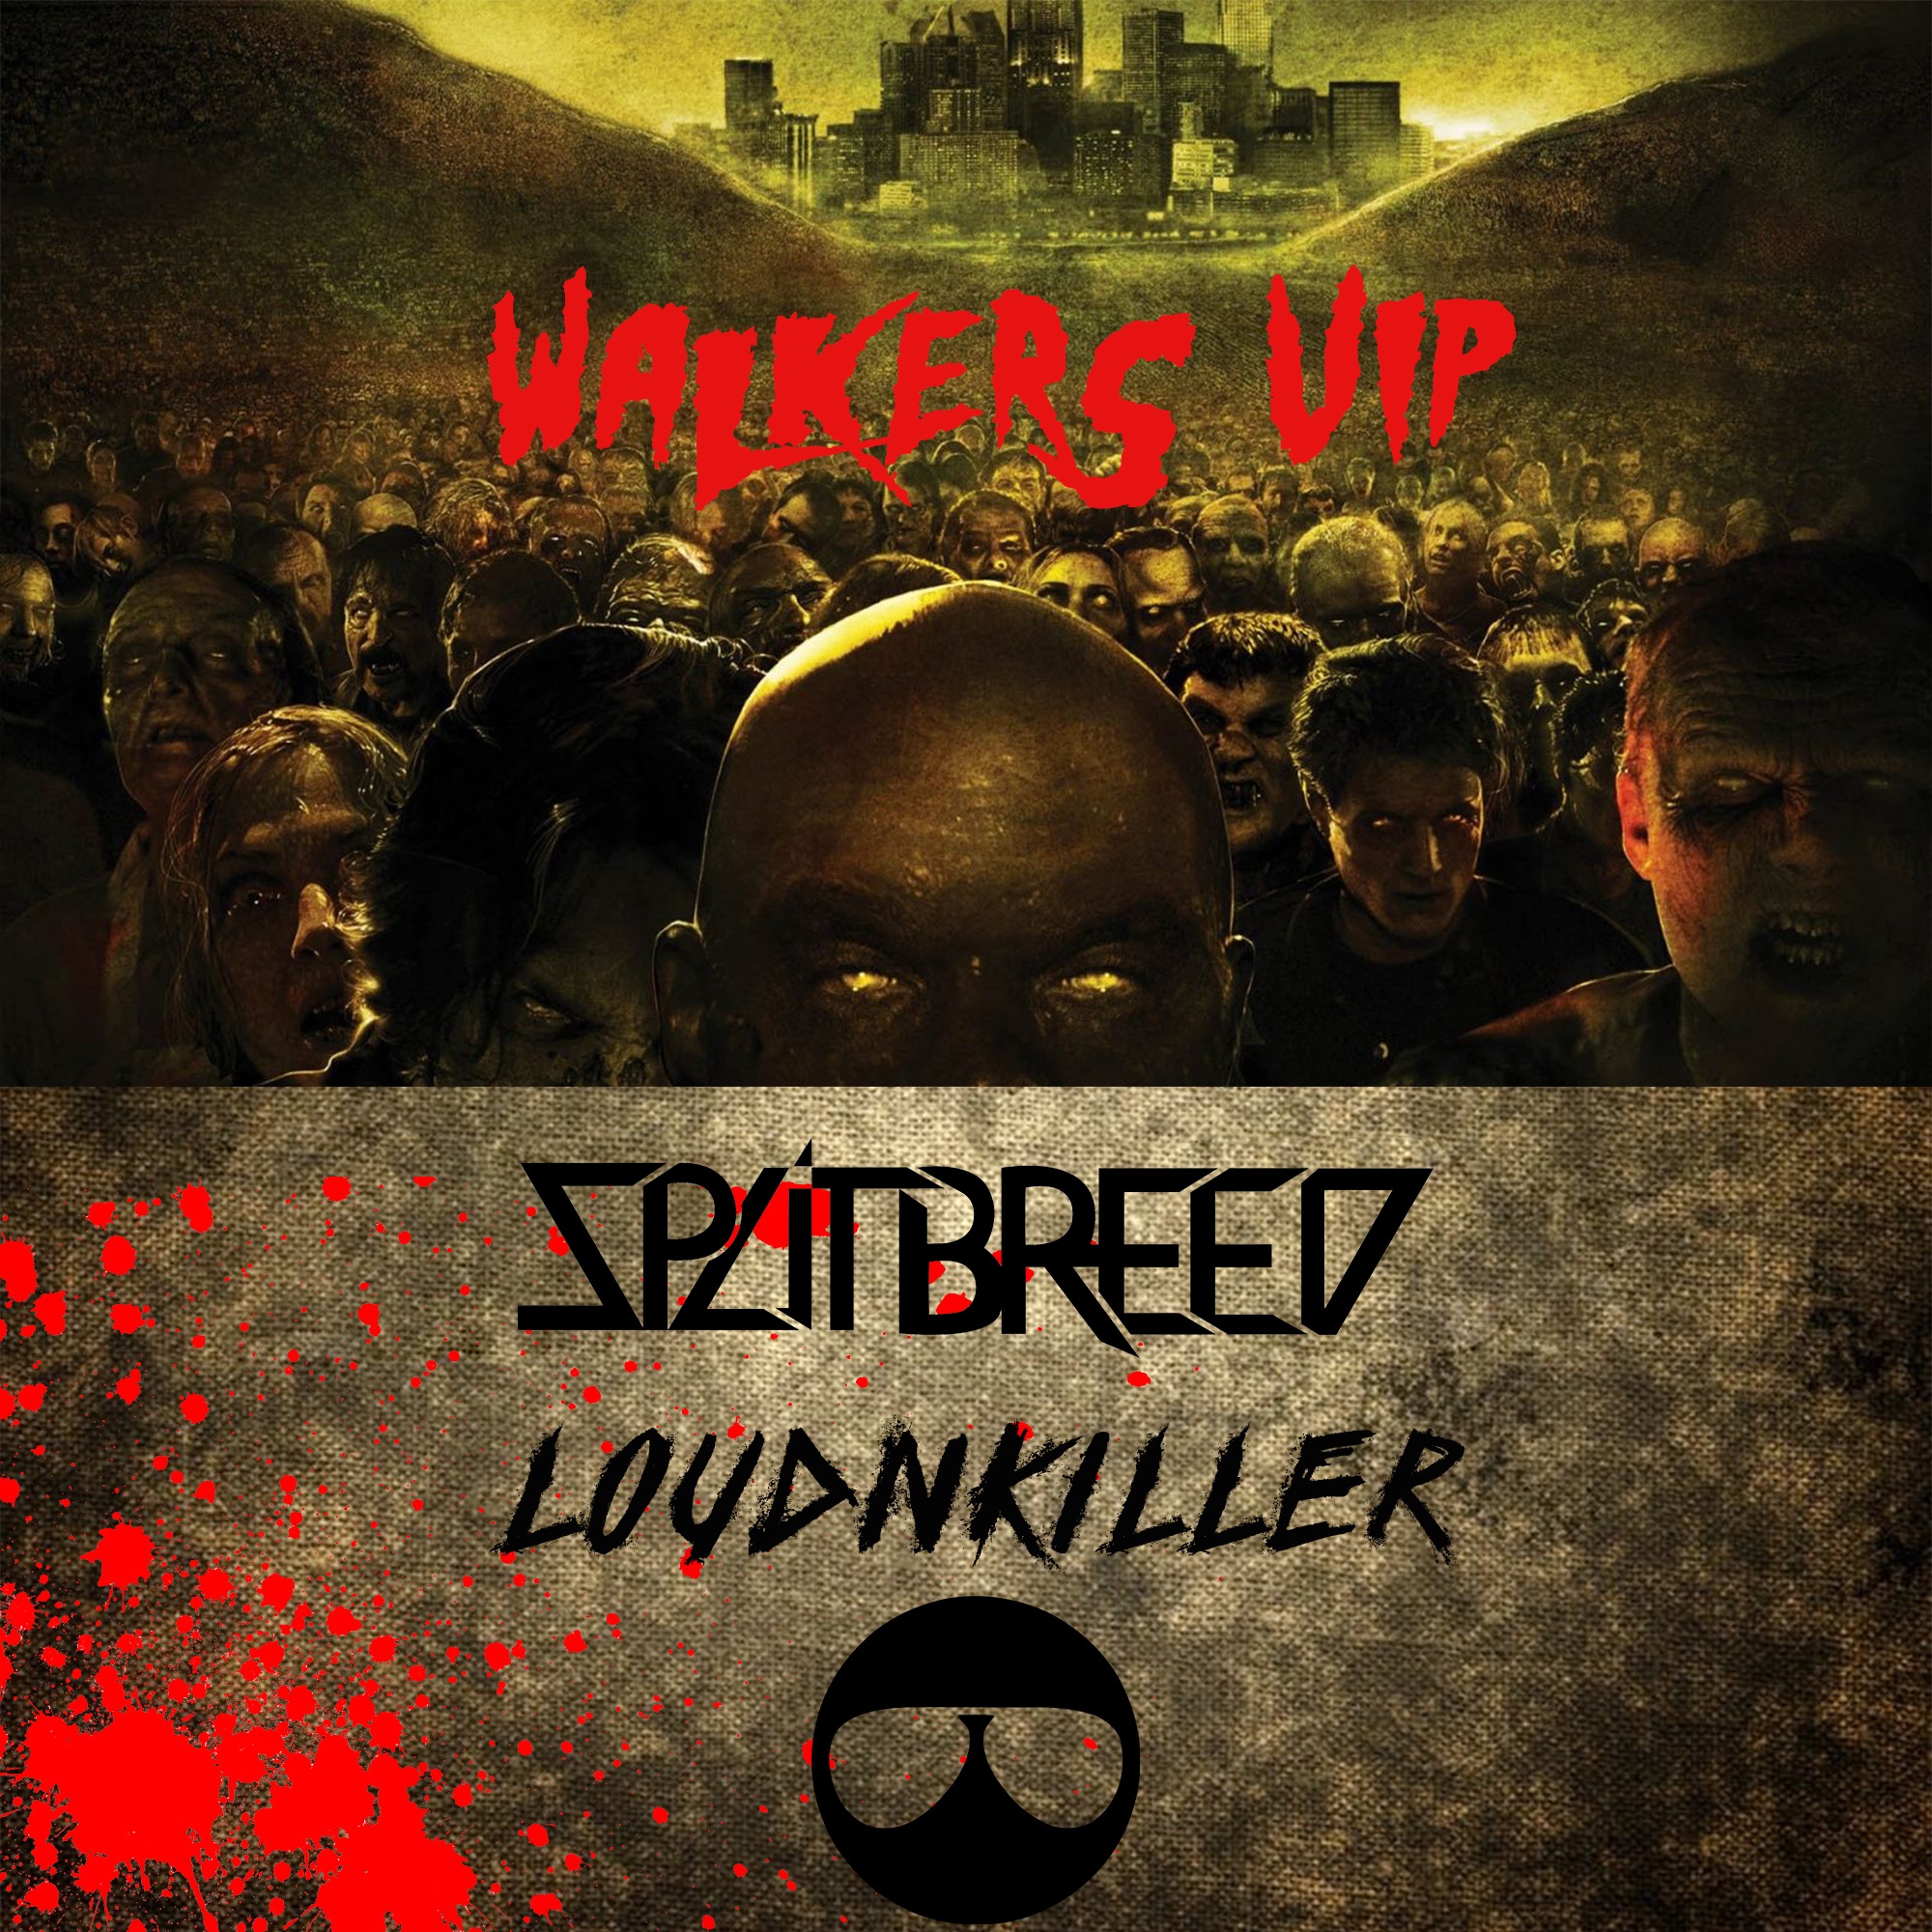 İndirmek SPLITBREED & LOUD N' KILLER - WALKERS (VIP)